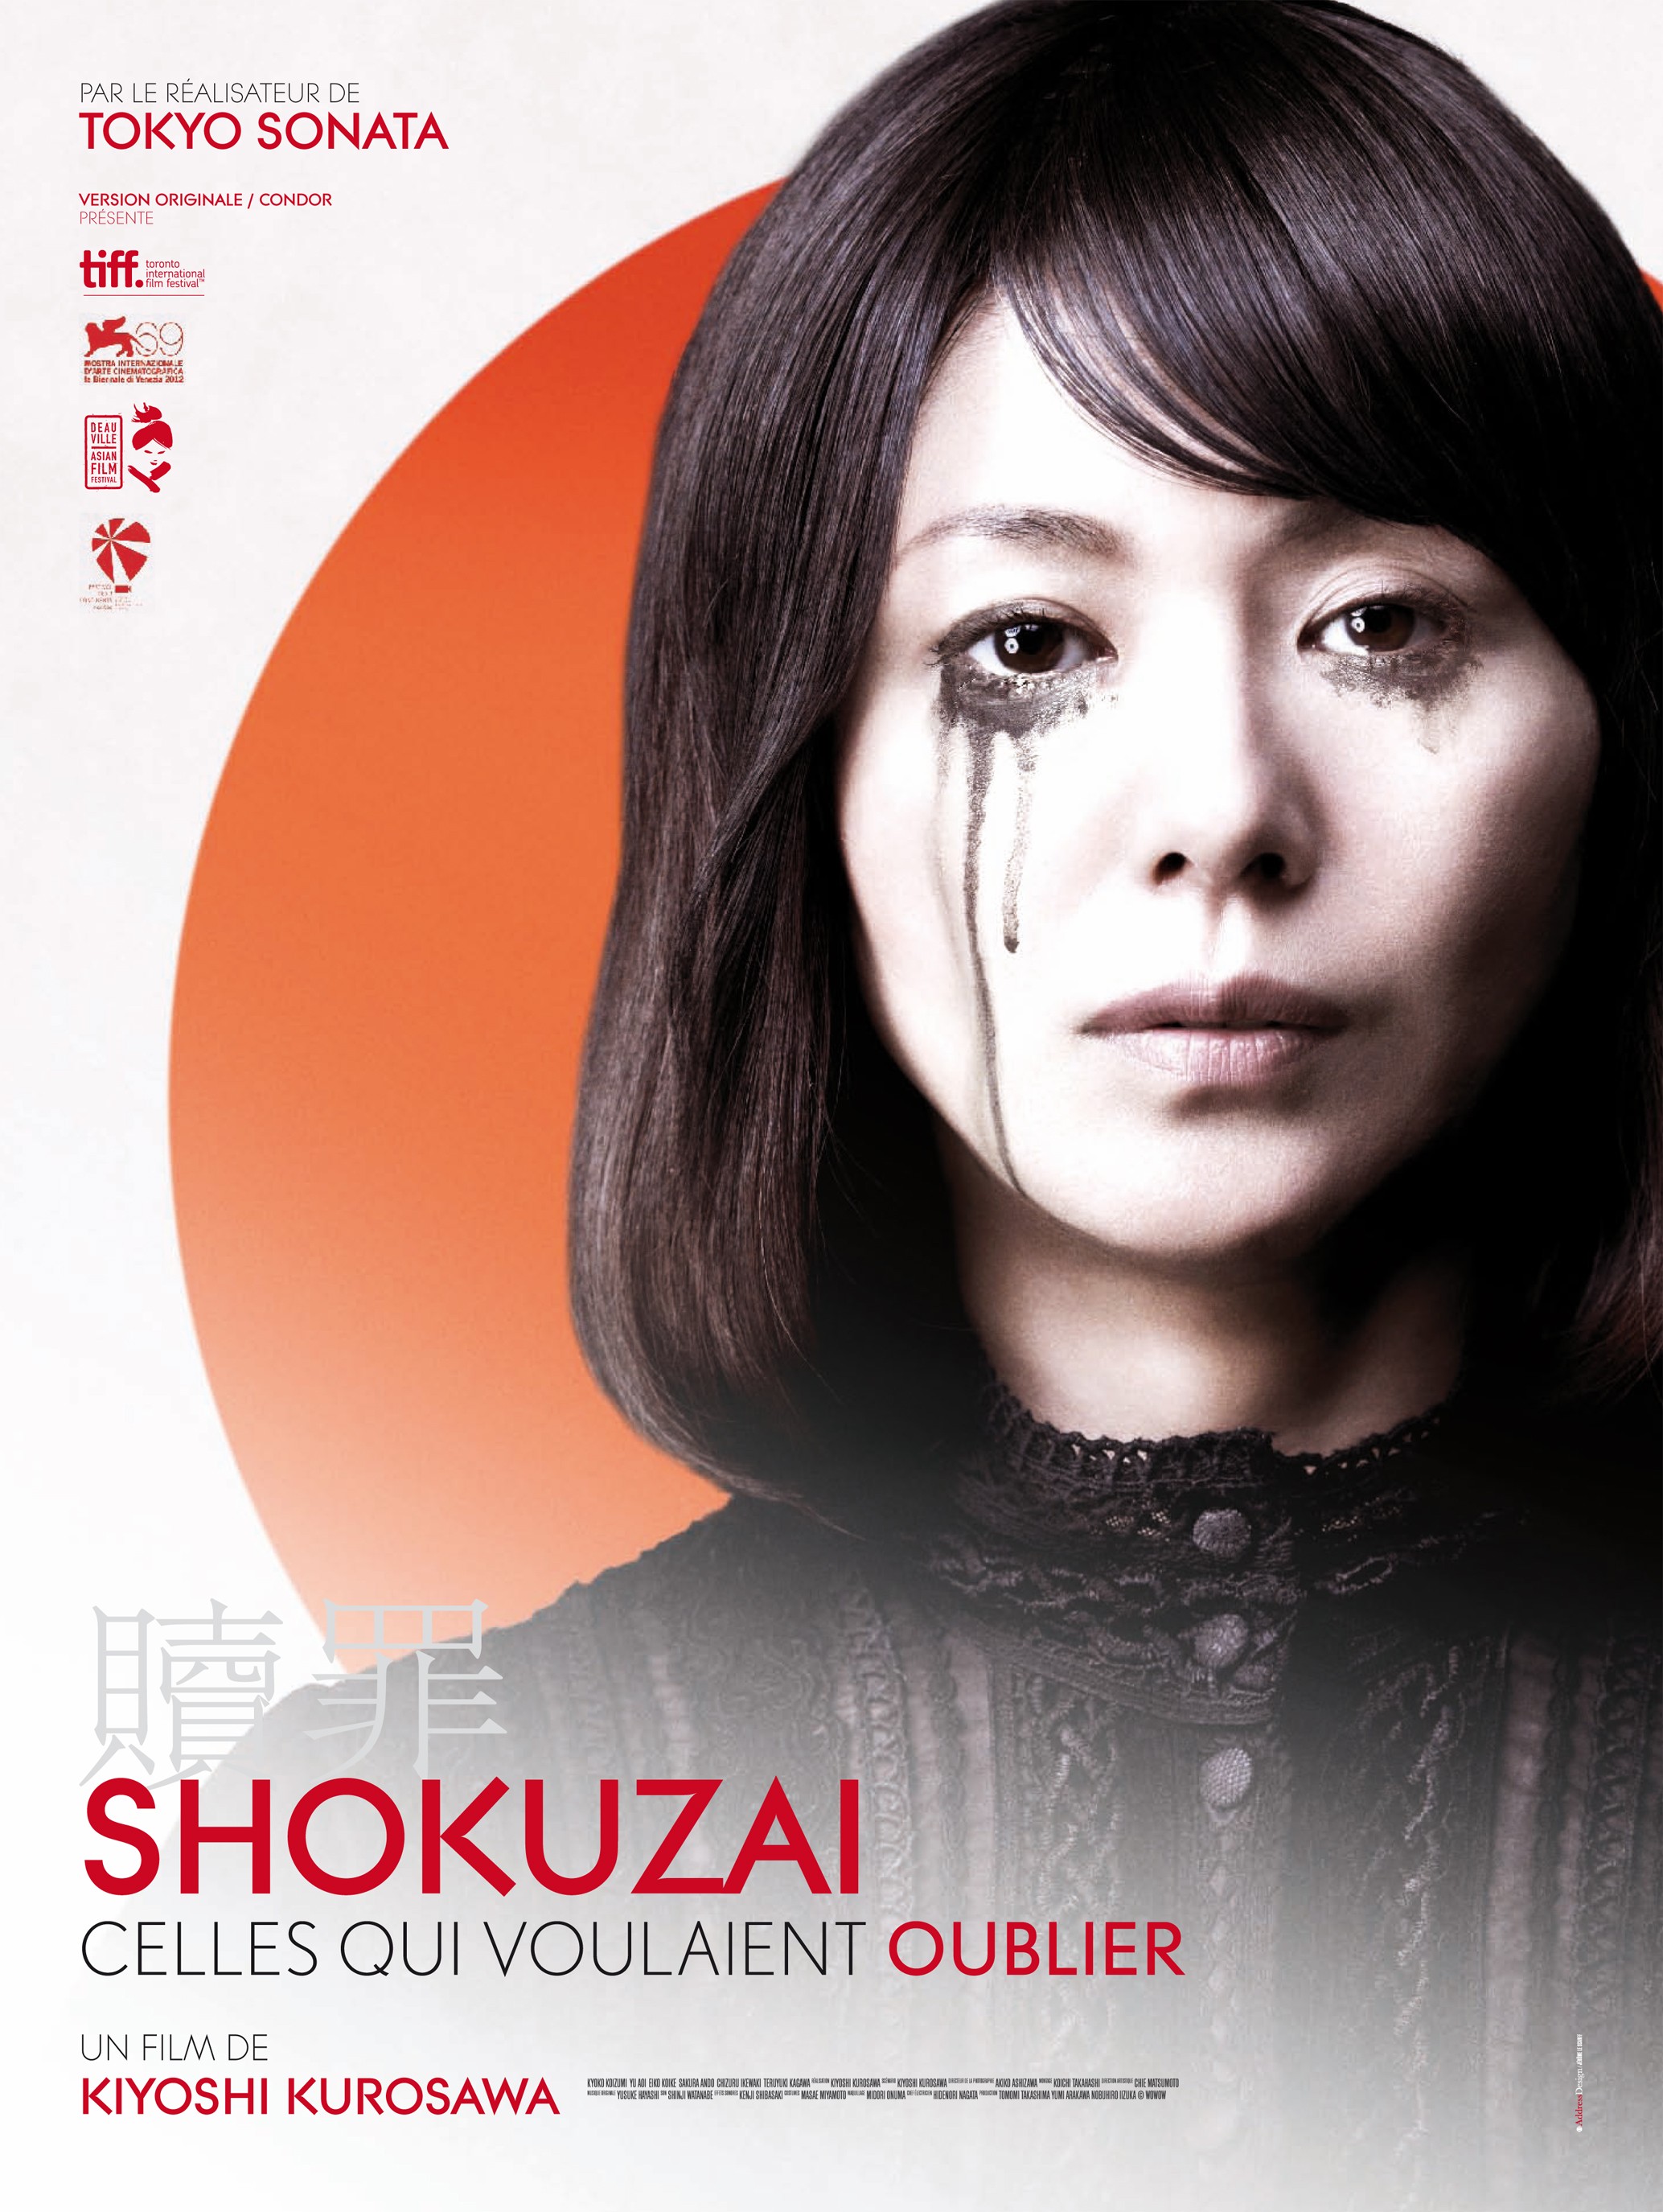 Mega Sized Movie Poster Image for Shokuzai - Celles qui voulaient oublier (#1 of 2)